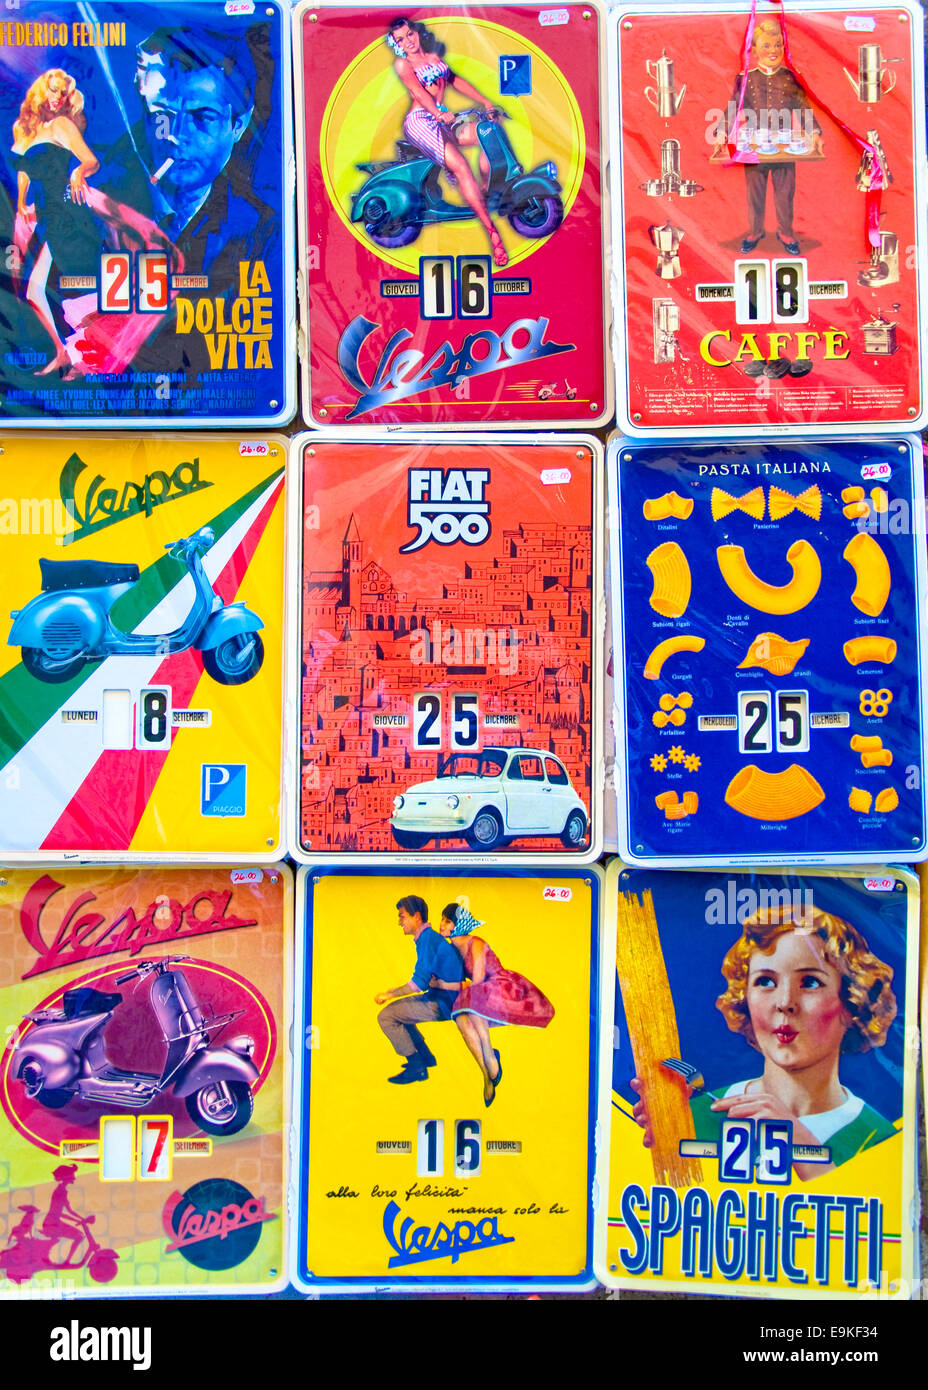 Vintage Calendars, Montepulciano, Siena, Tuscany, Italy Stock Photo